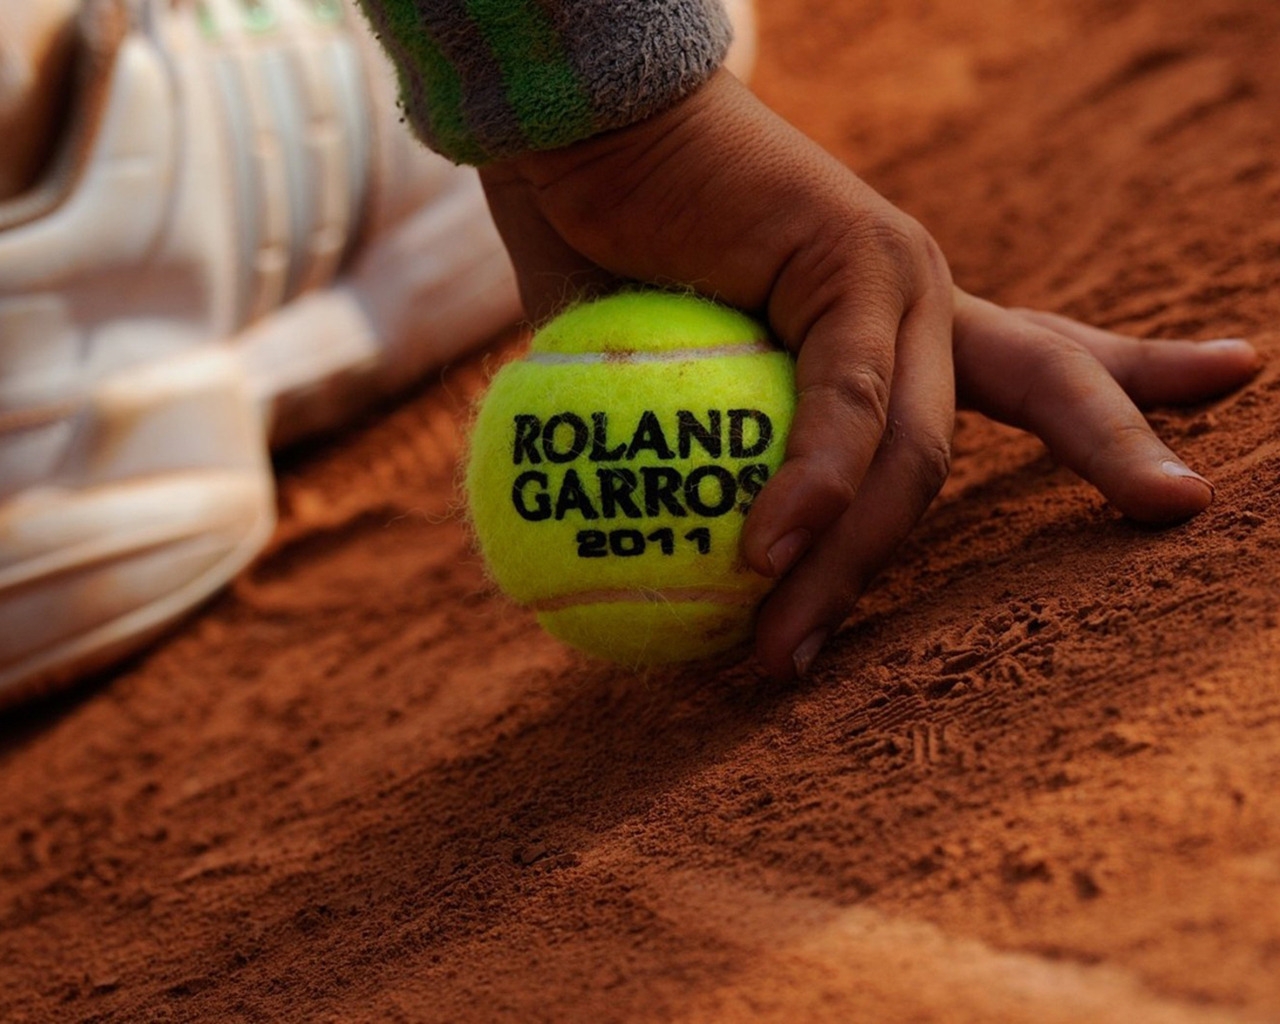 Roland Garros for 1280 x 1024 resolution